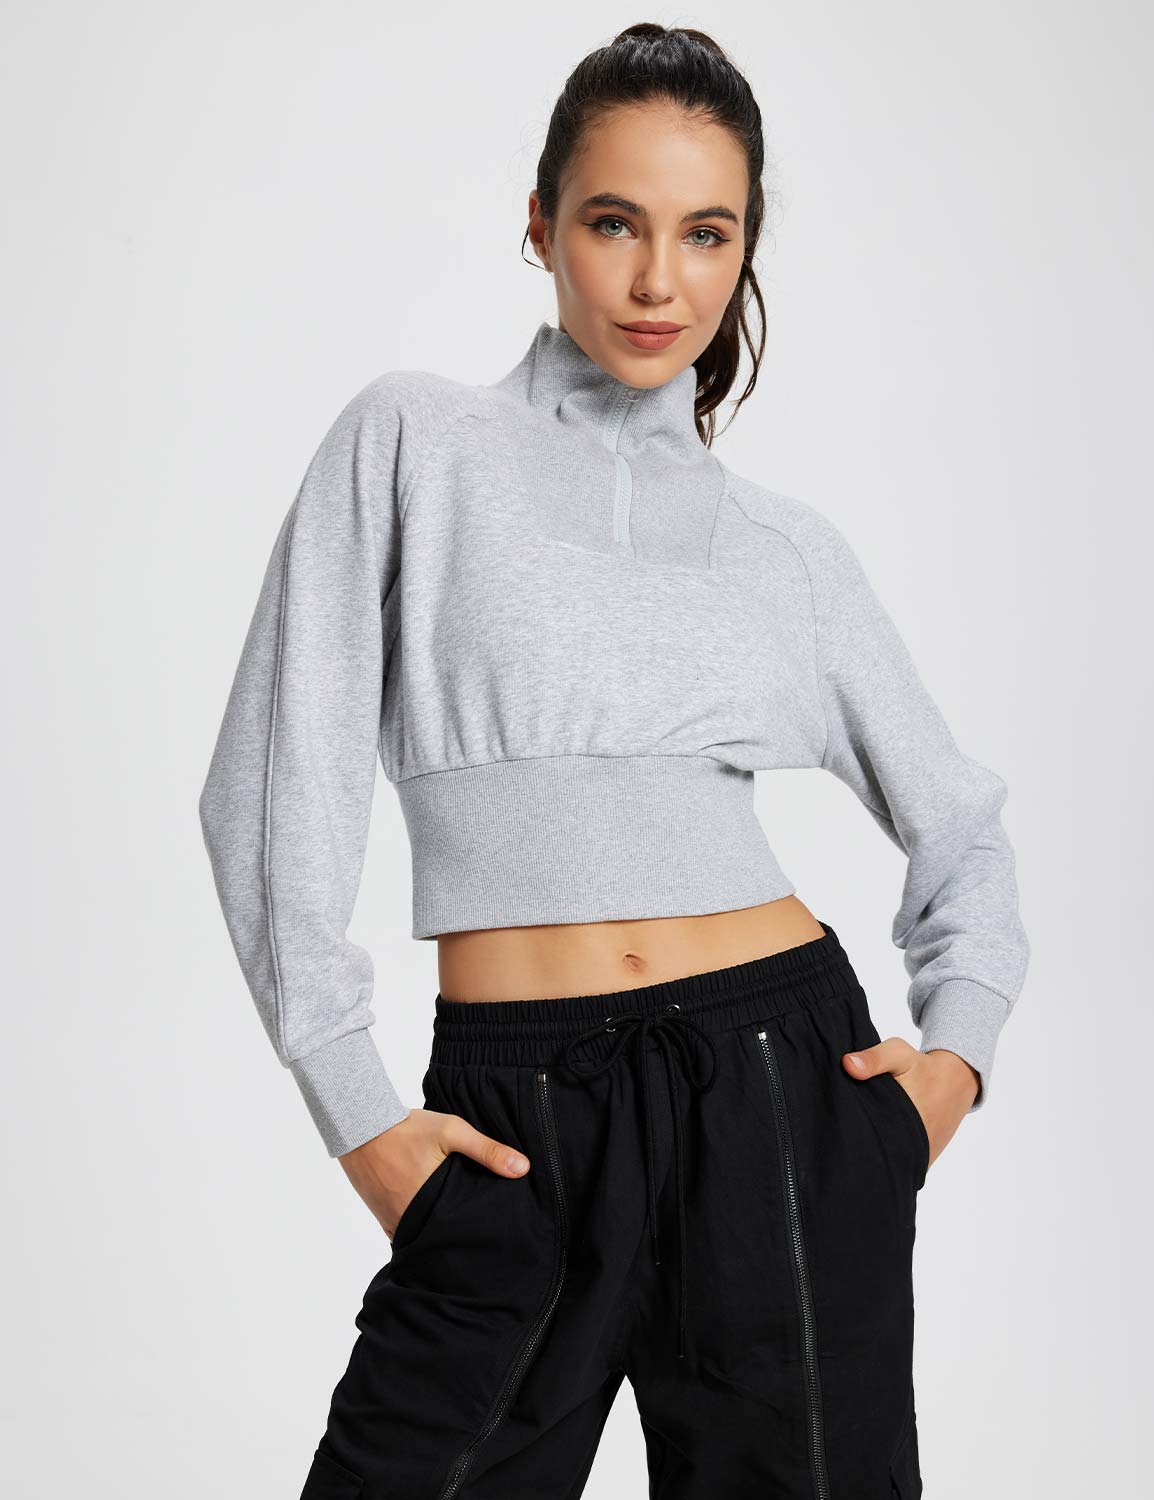 BALEAF Women's Zip Up Sweatshirts Fleece Lined Collar Crop Jackets